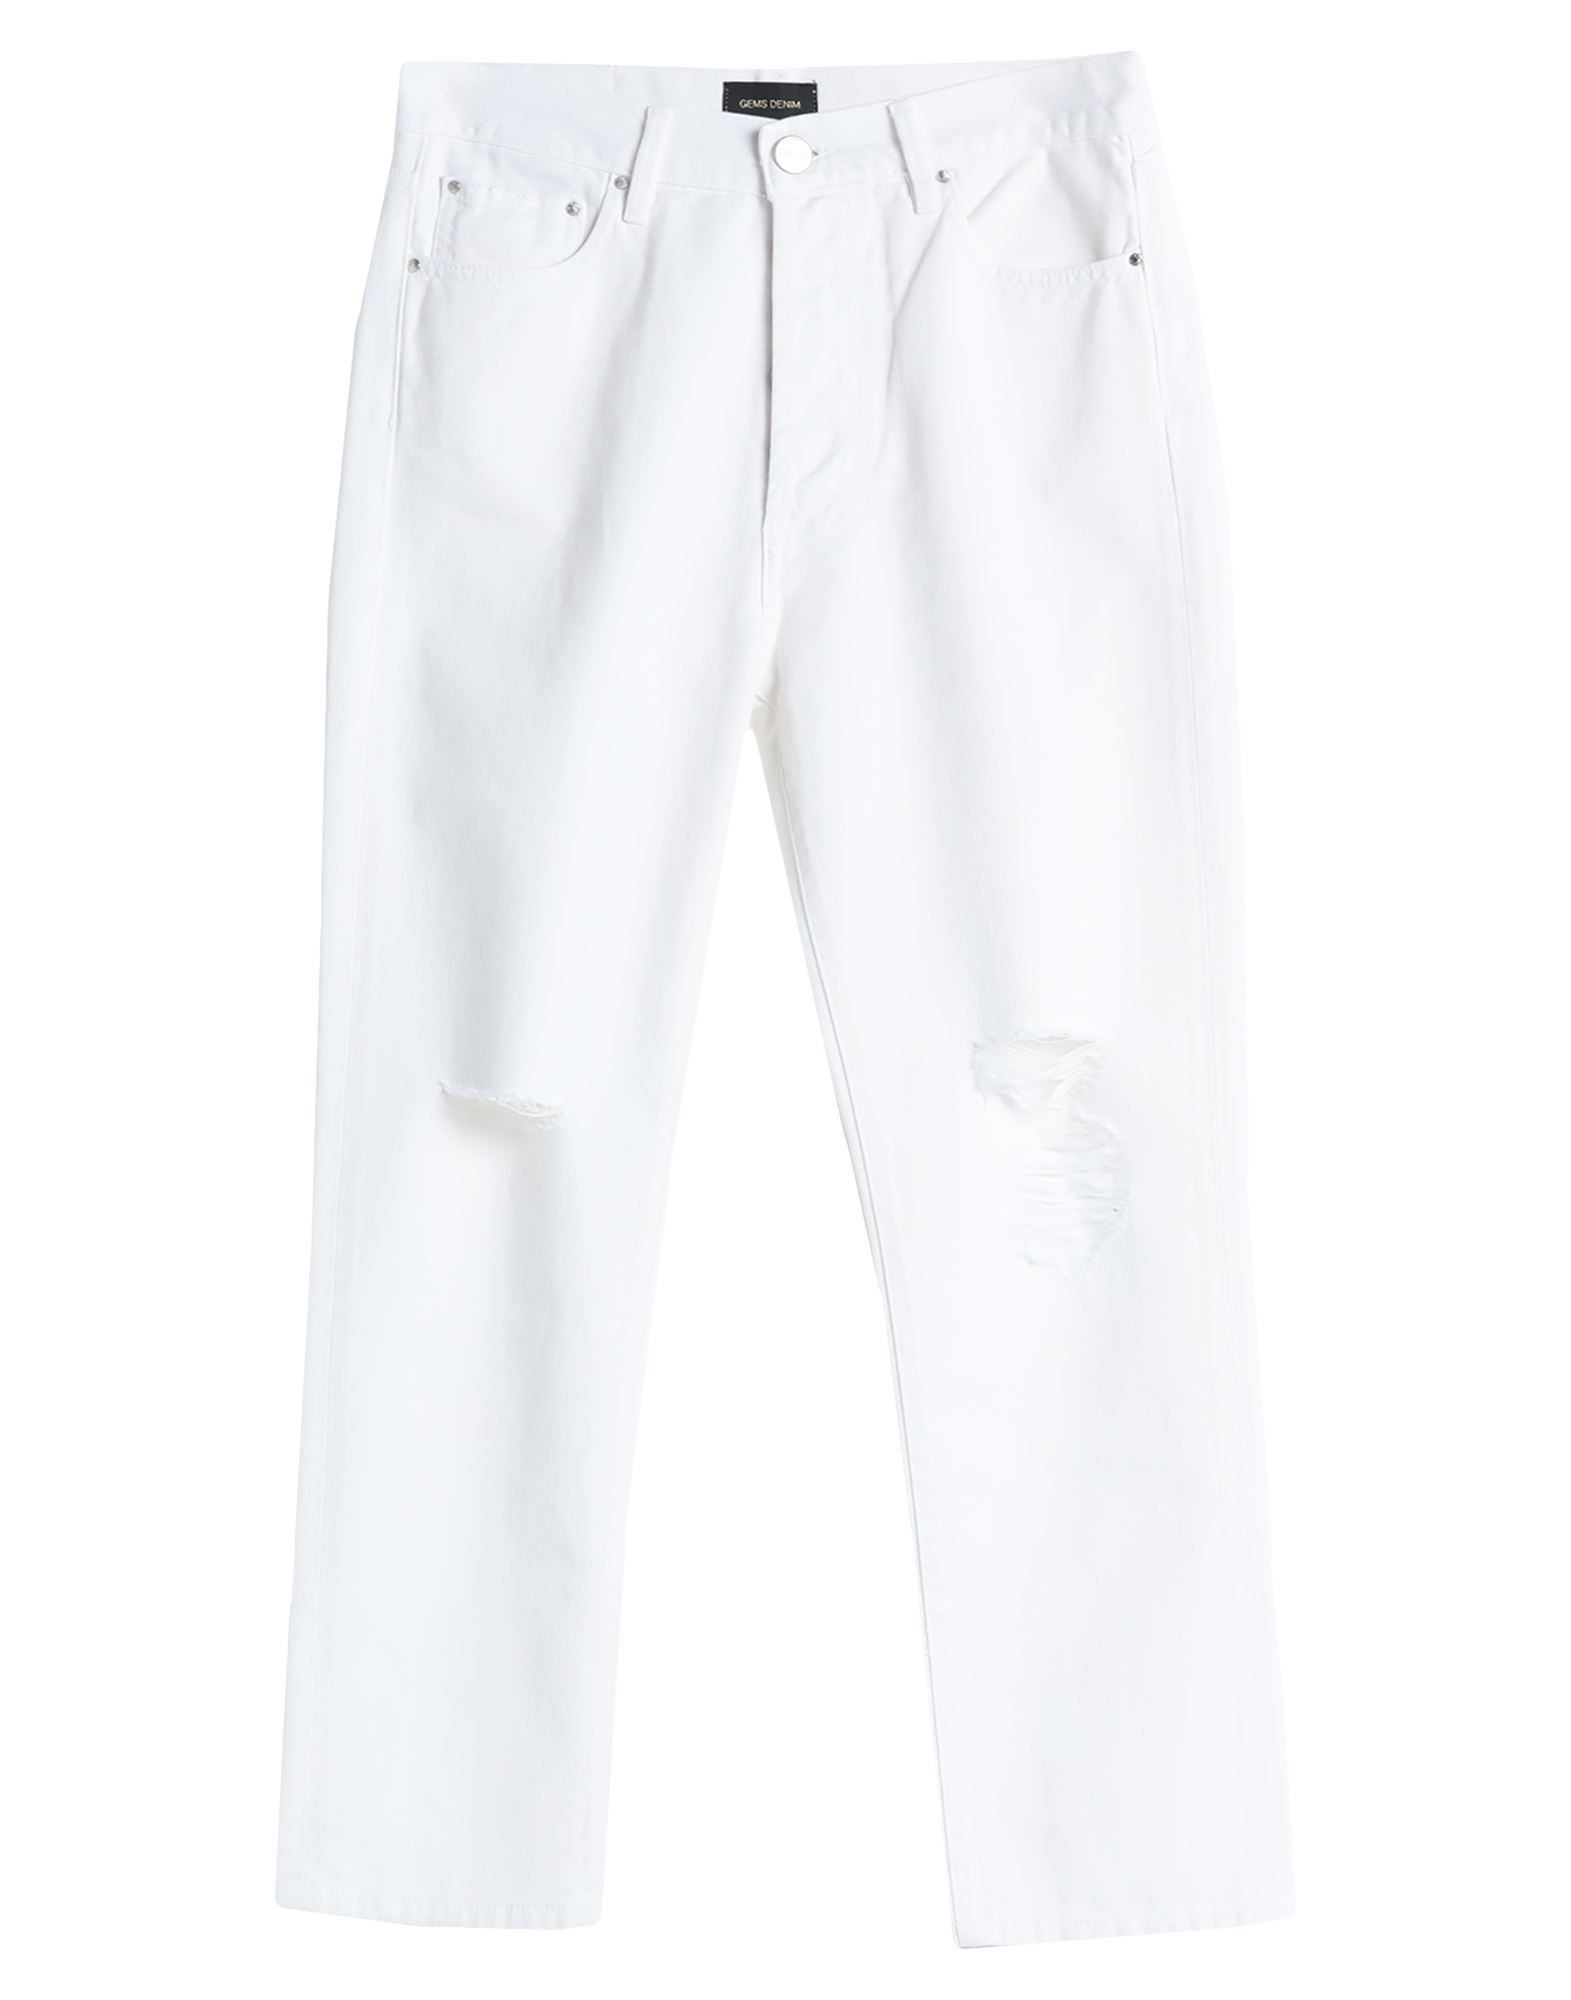 Shop Gem's Gems Woman Jeans White Size 28 Cotton